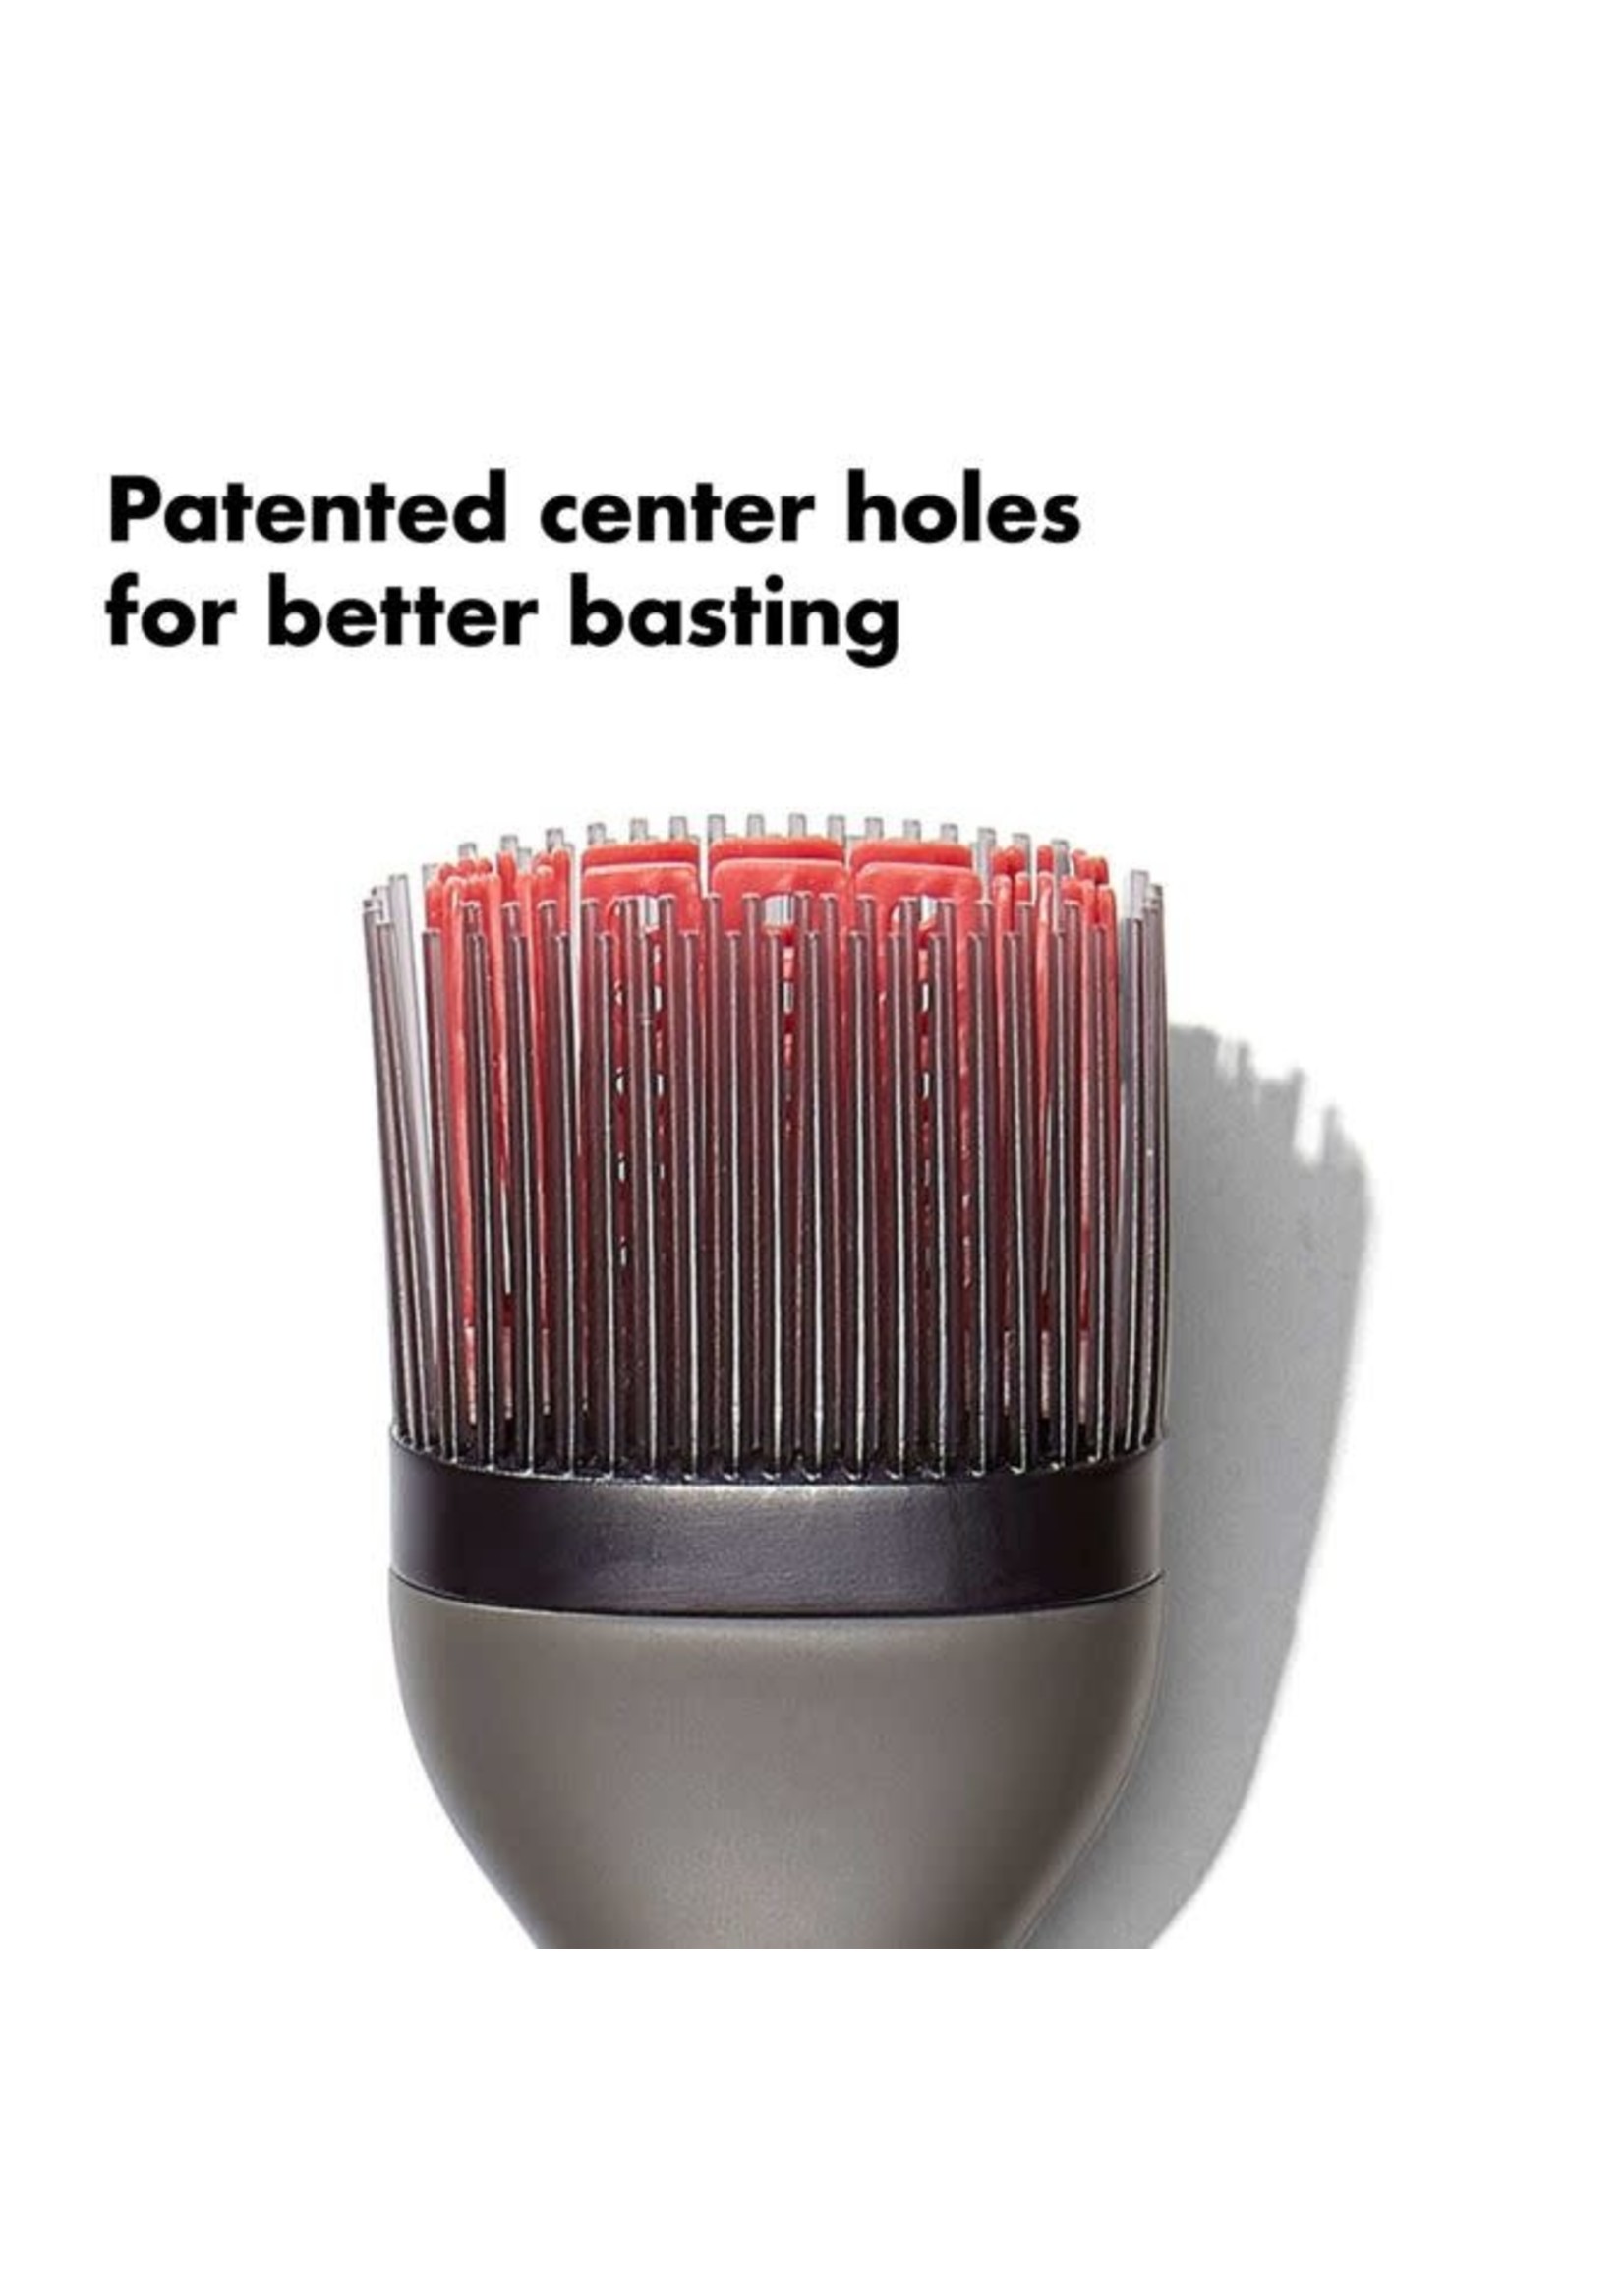 OXO Good Grips Silicone Basting Brush